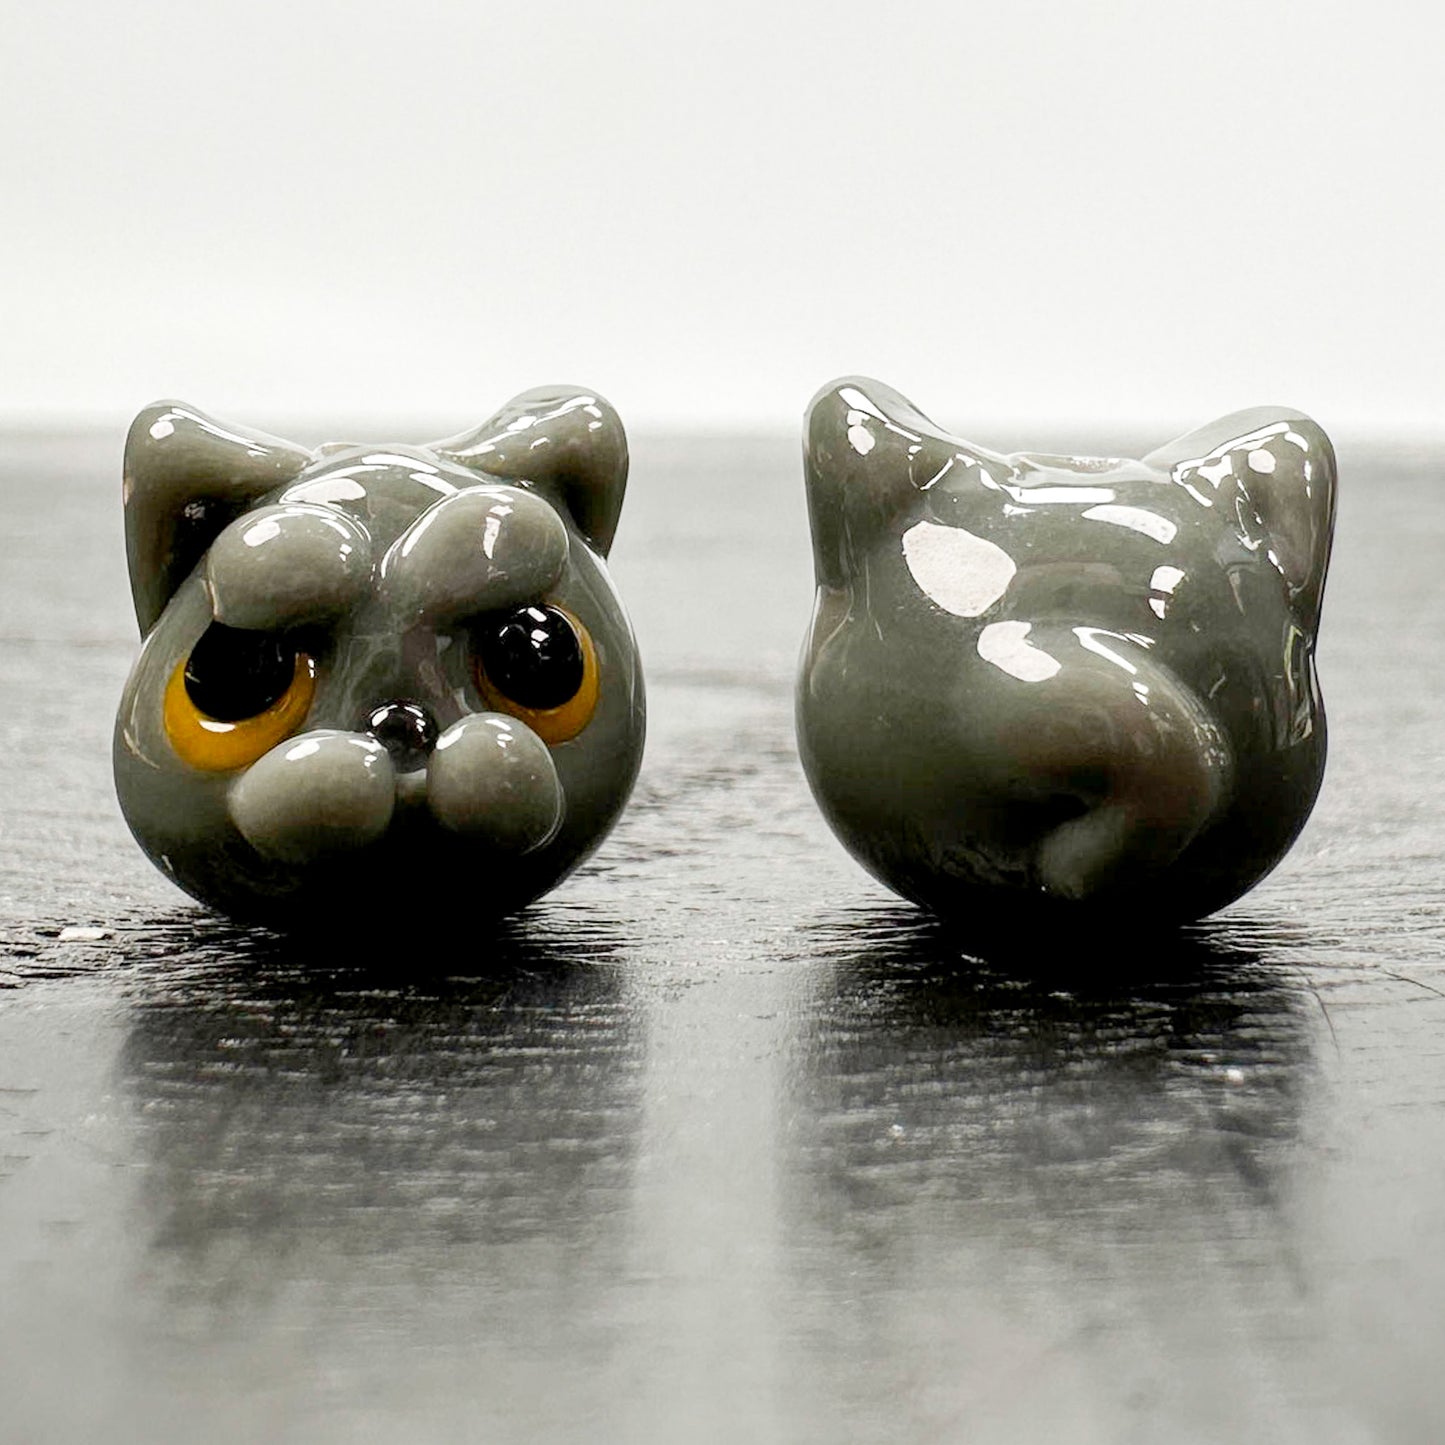 Chibi Handmade Glass Beads - British Shorthair Cat-The Bead Gallery Honolulu